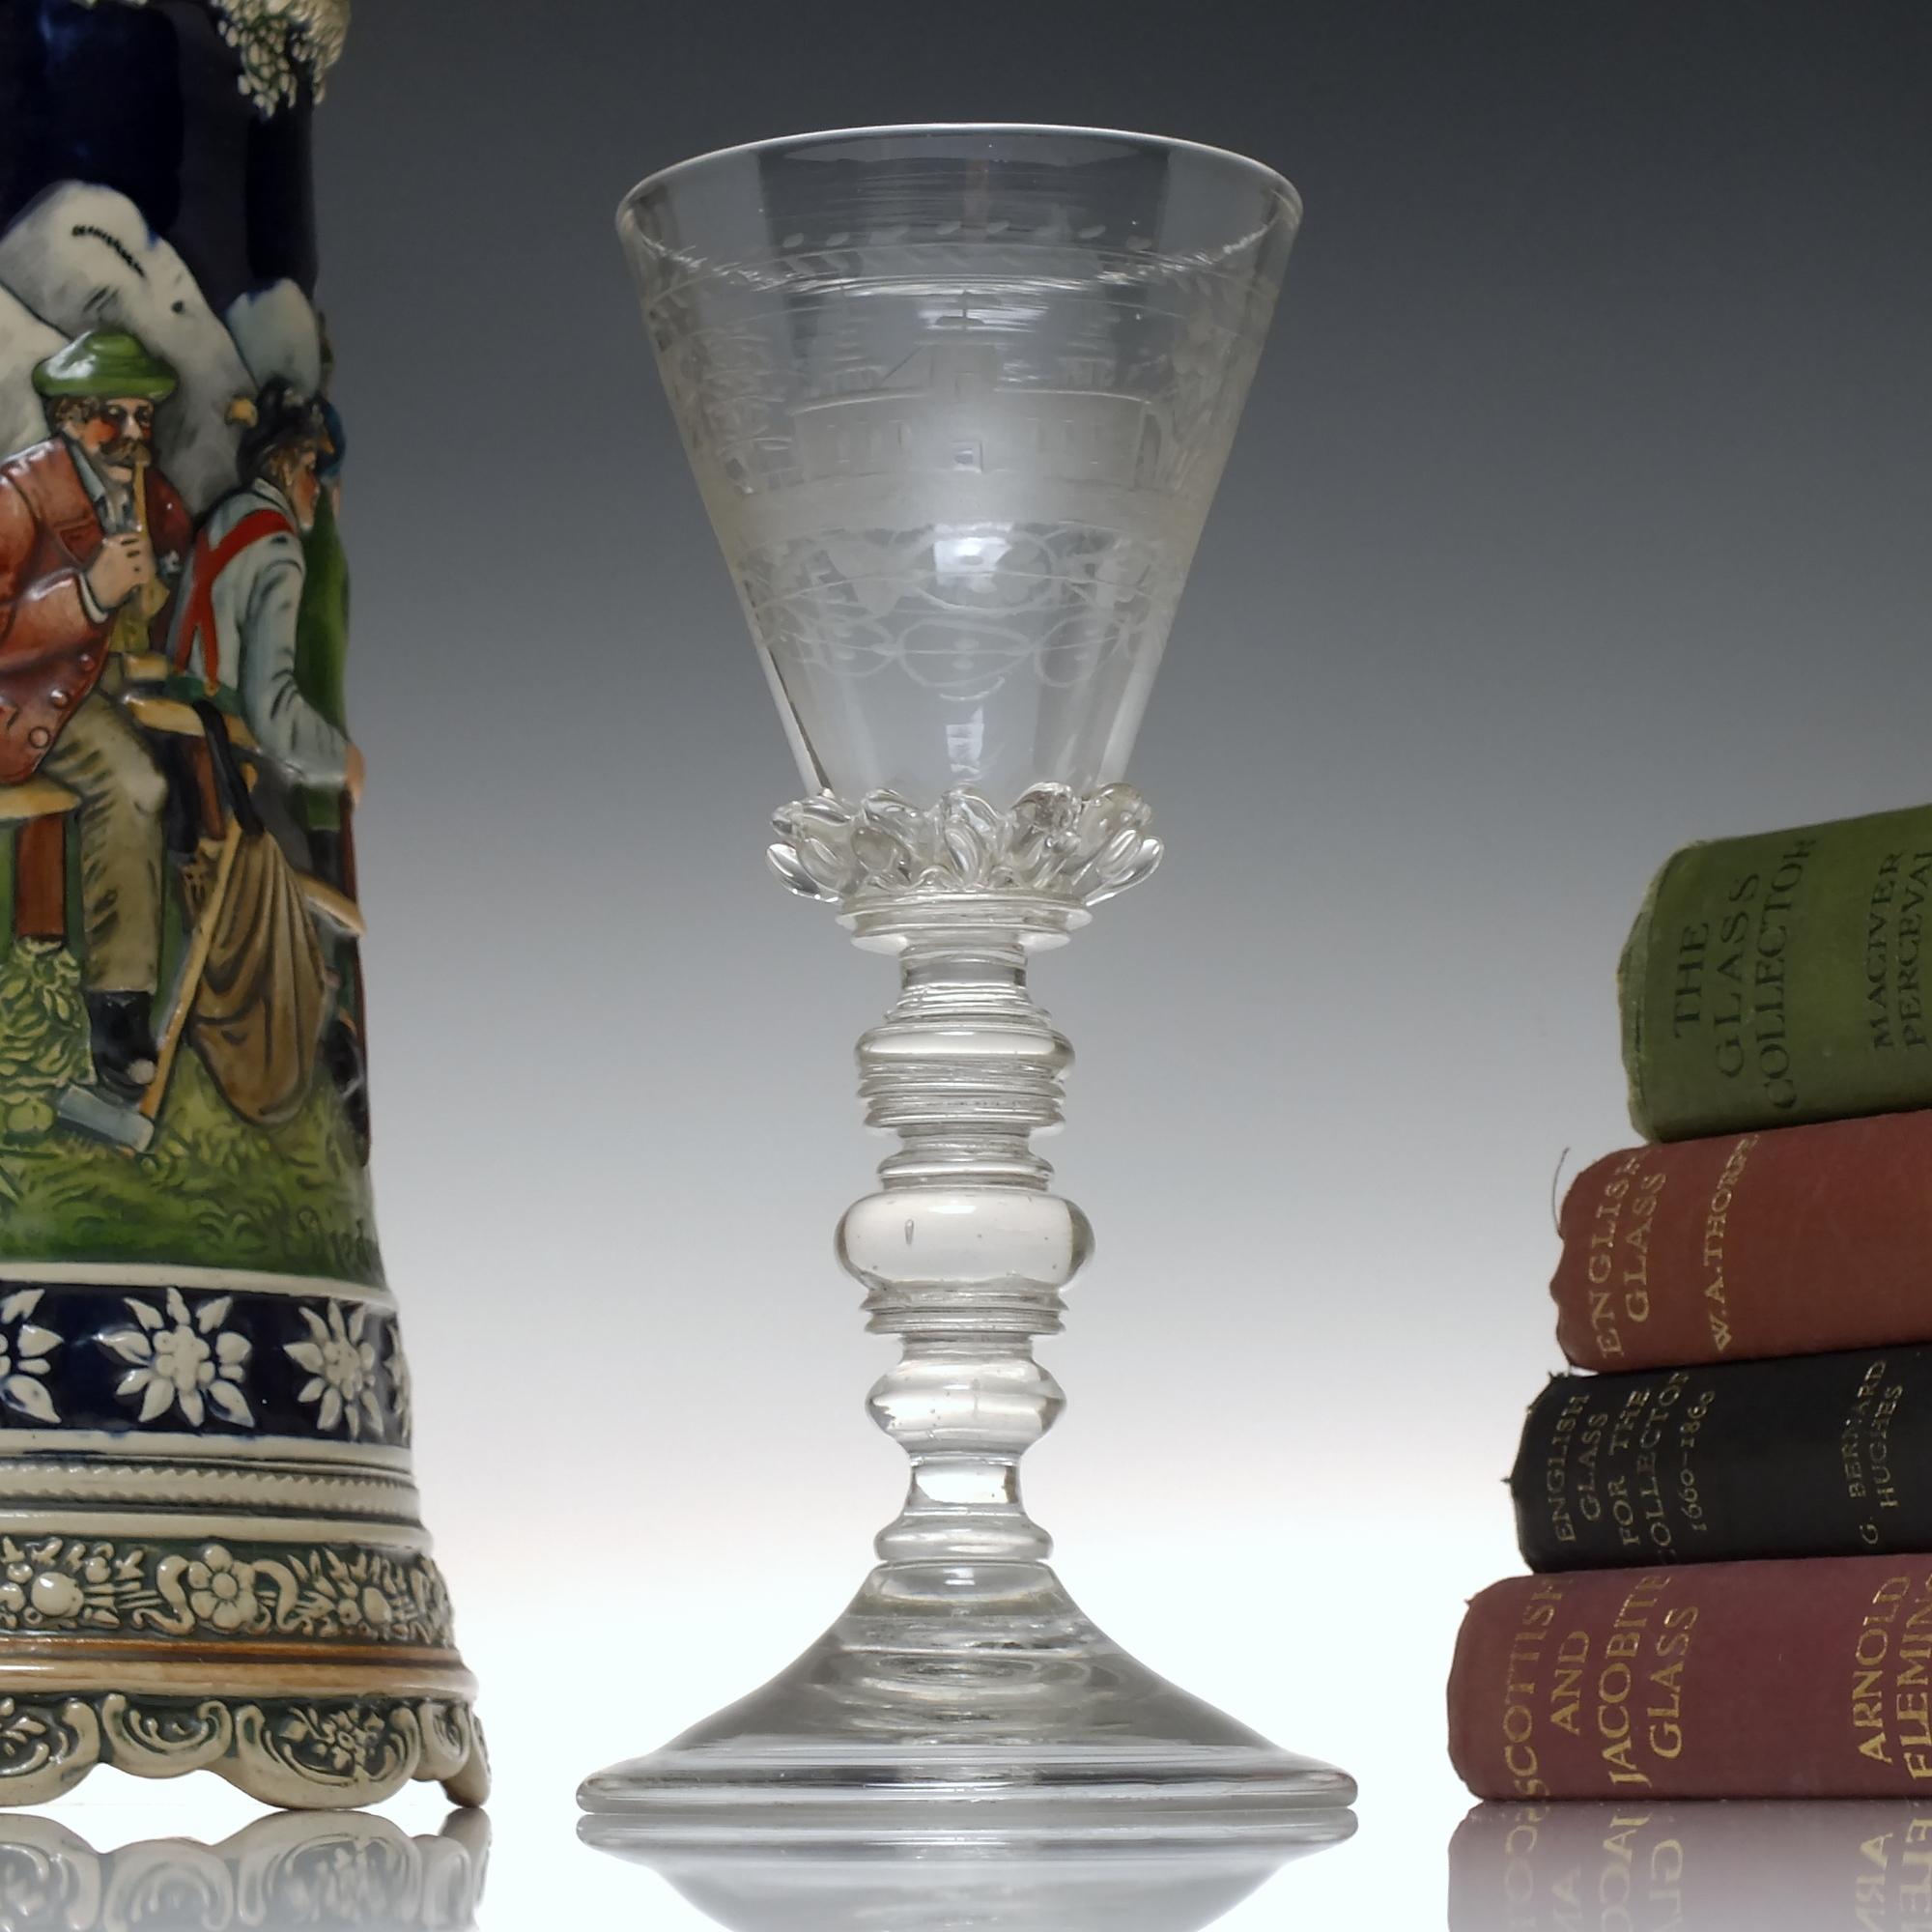 Technische Beschreibung

Ein fantastischer böhmischer Glaspokal aus dem 17. Jahrhundert, datiert zwischen ca. 1680-90.

Sie hat eine konische Schale mit Zacken, die mit klassischen böhmischen Gravuren wie Schlössern, Blumen, Laub und Früchten